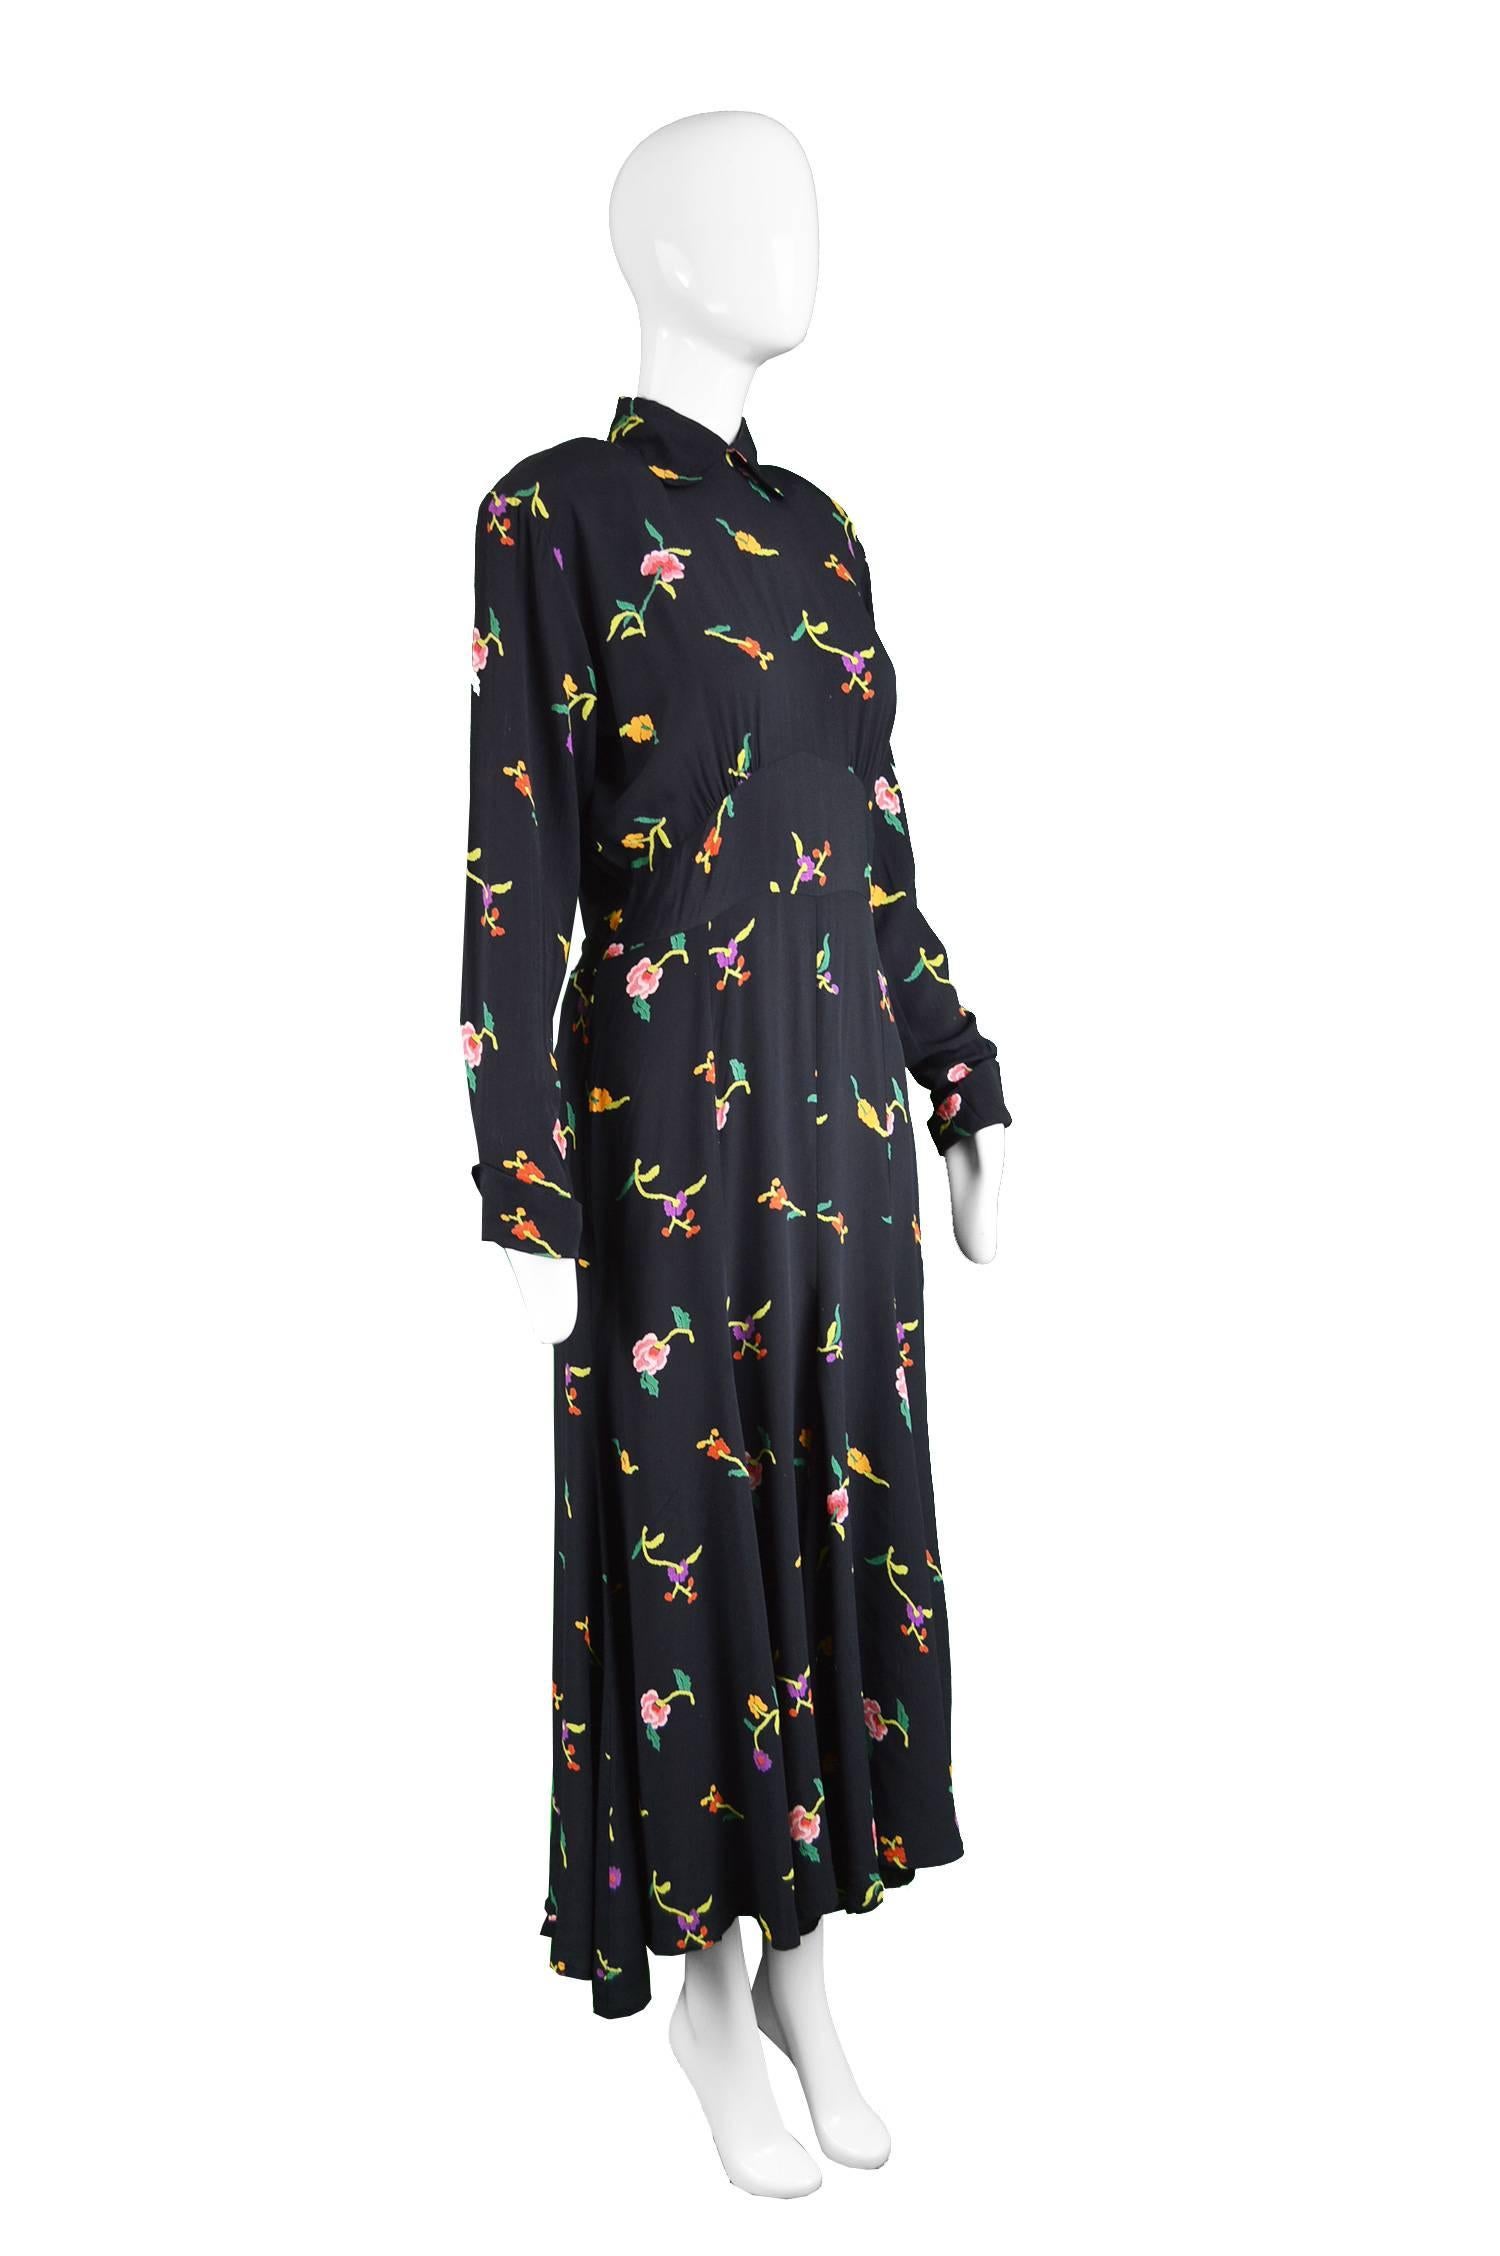 Norma Kamali Vintage Floral Black Crepe Shoulder Padded Dress, 1980s 1